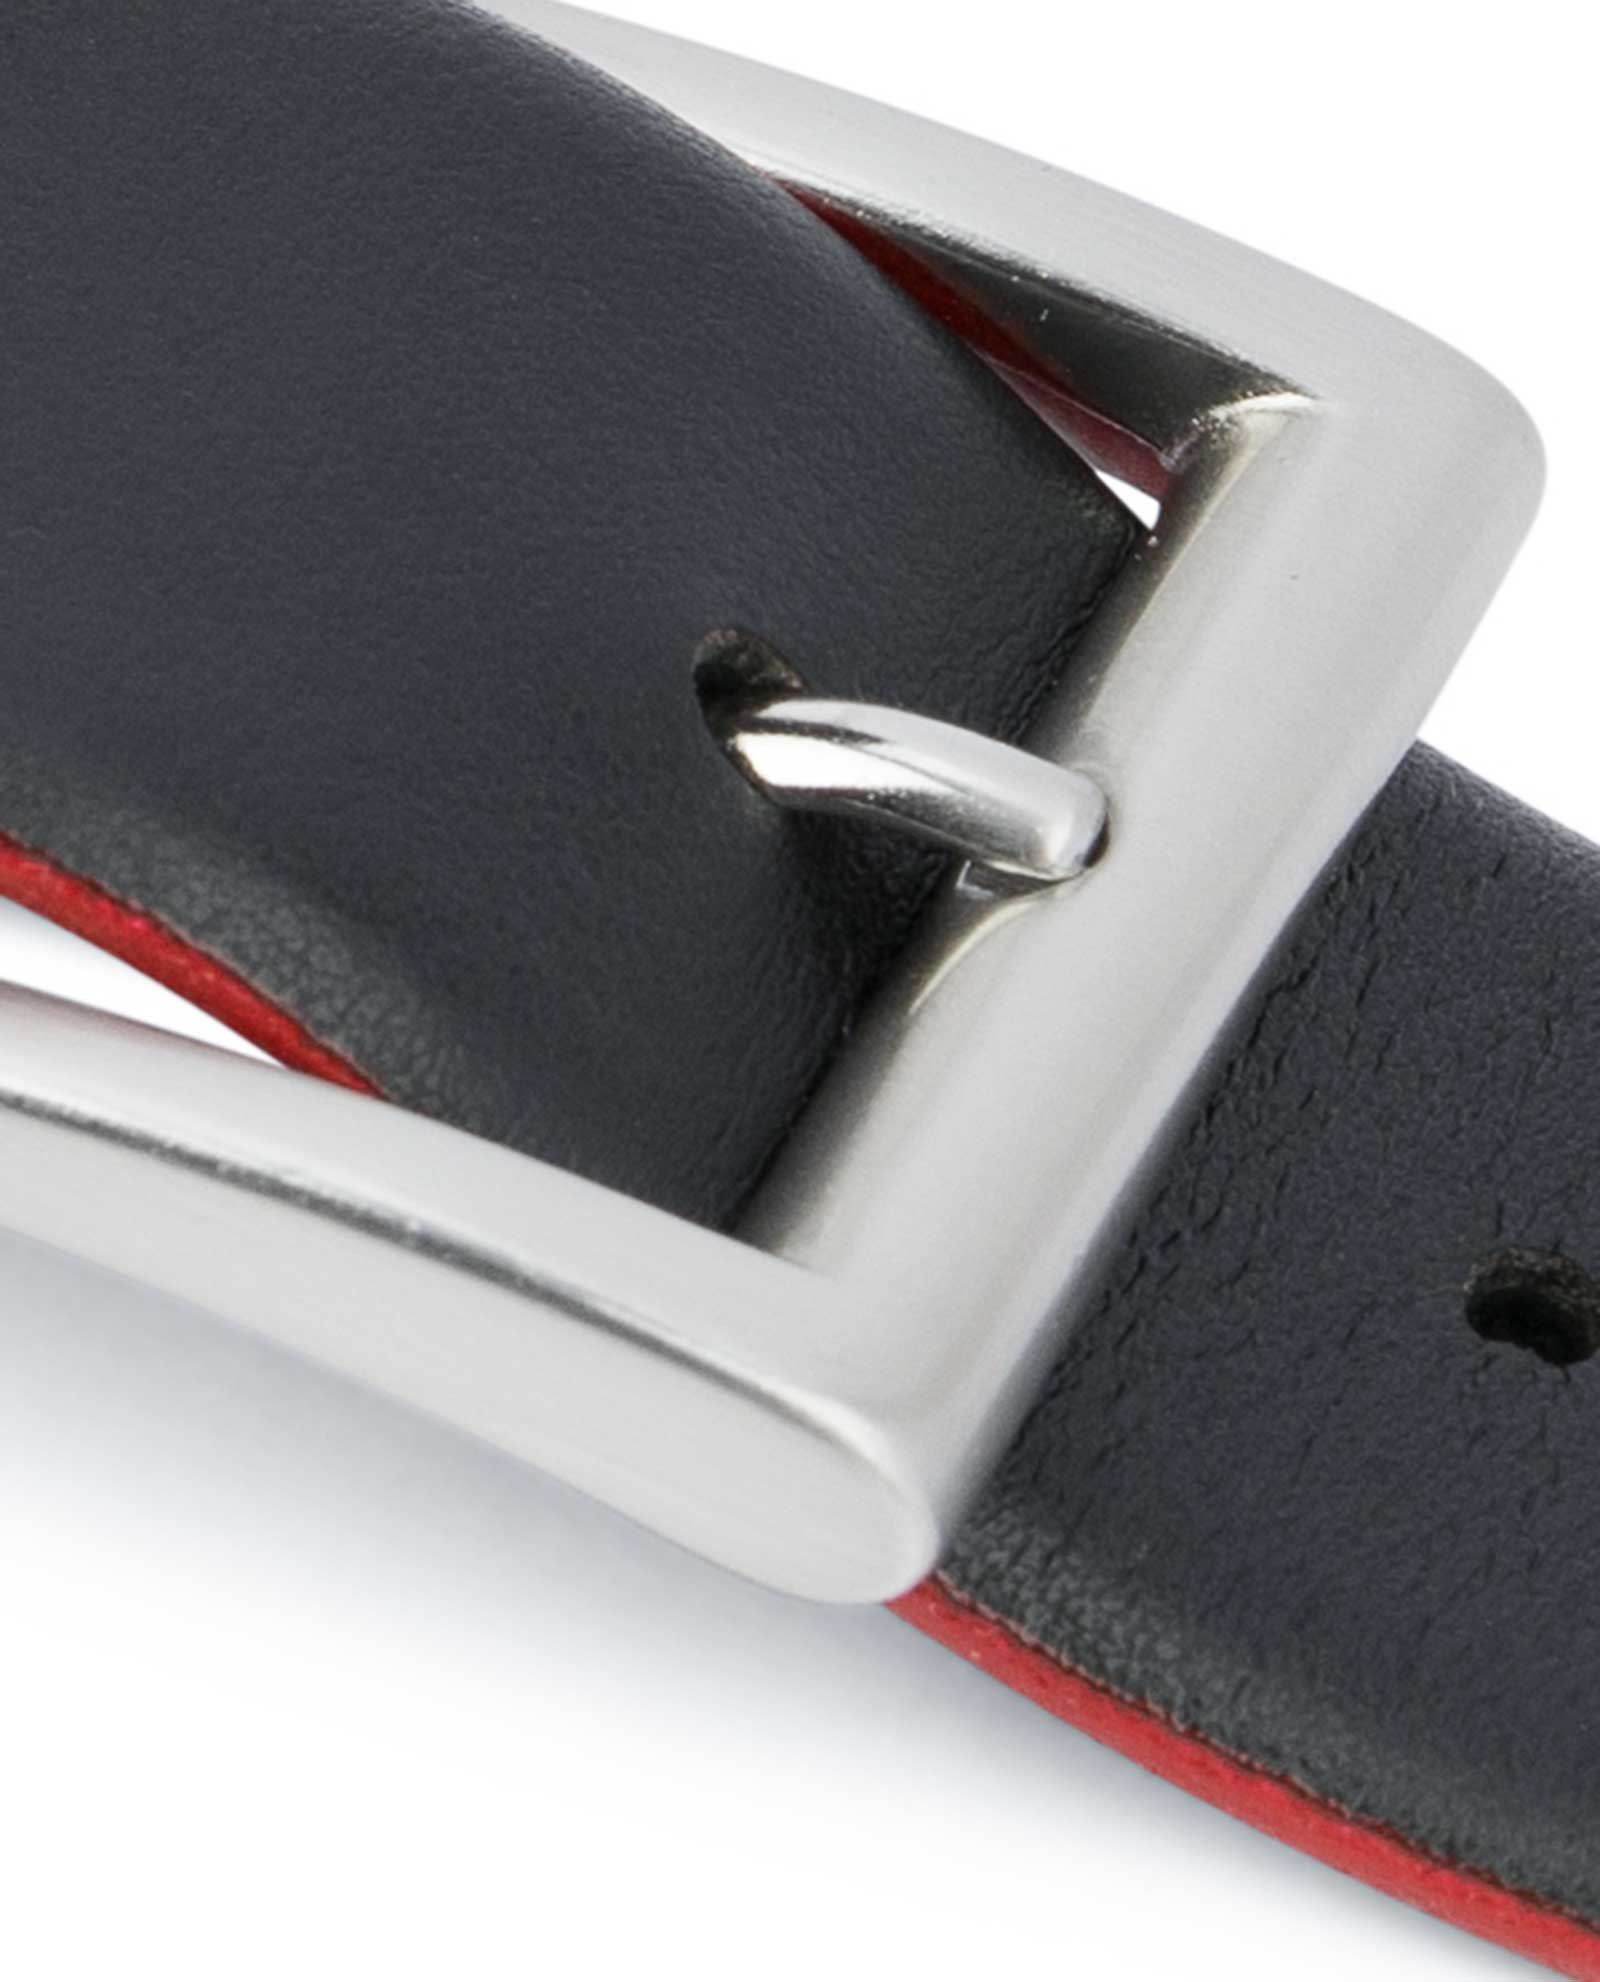 designer belt buckles for men